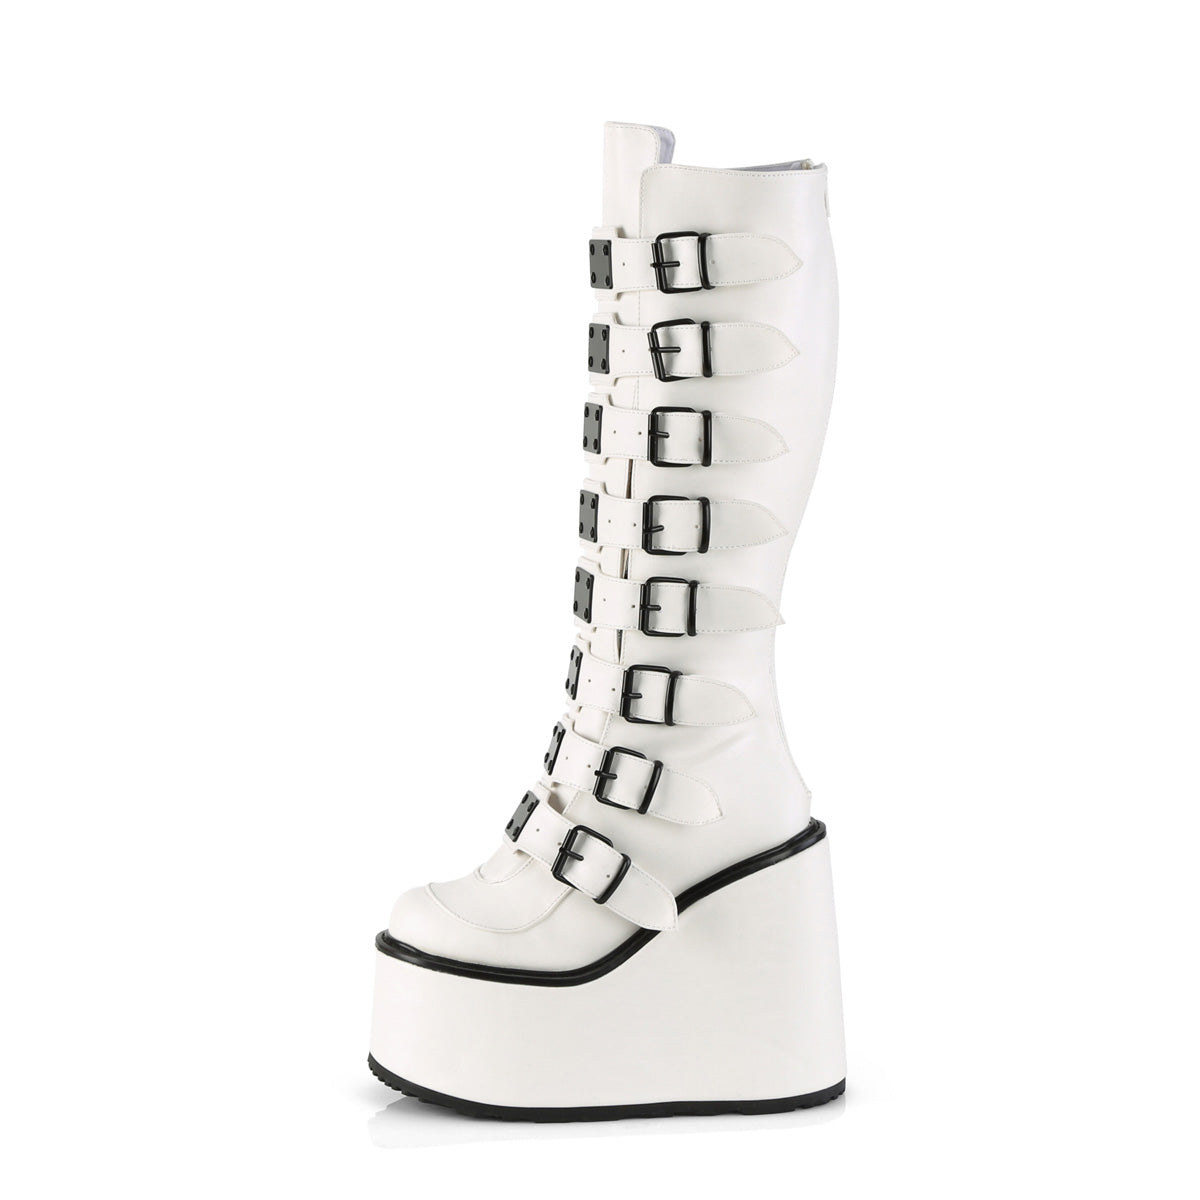 White Knee High Boots - Demonia Swing-815 White